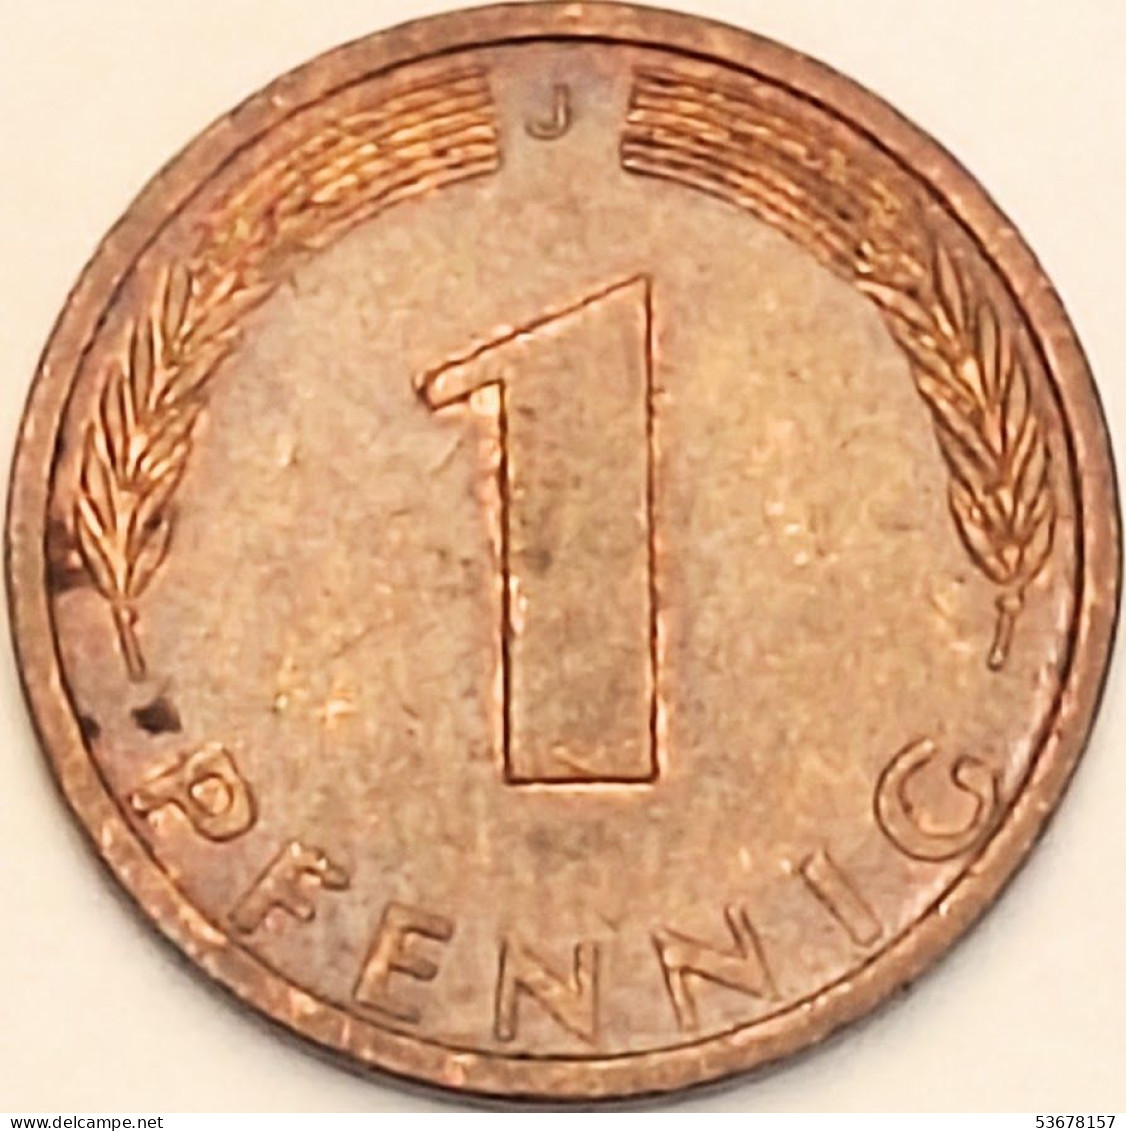 Germany Federal Republic - Pfennig 1974 J, KM# 105 (#4466) - 1 Pfennig